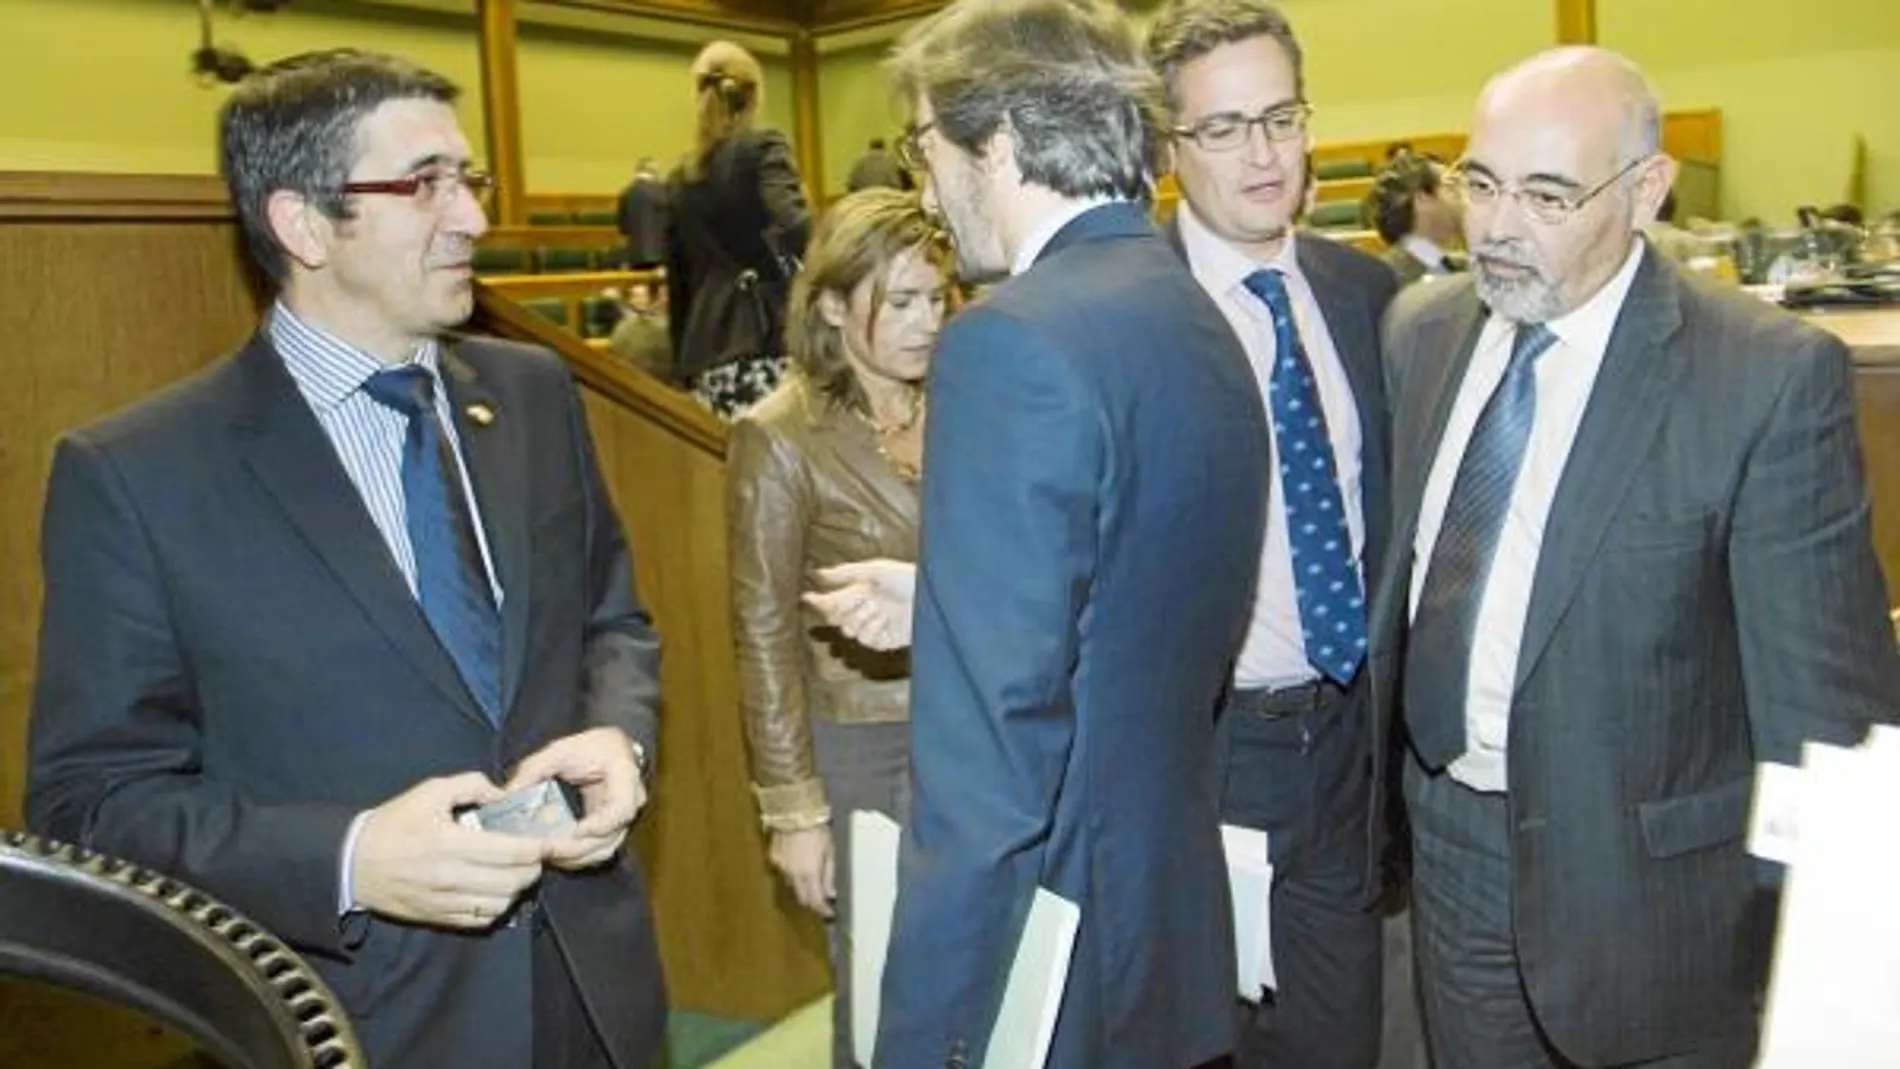 El lendakari, Patxi López, ayer, en la Cámara de Vitoria, conversando con el secretario general del PP vasco, Iñaki Oyarzábal, en presencia de Basagoiti